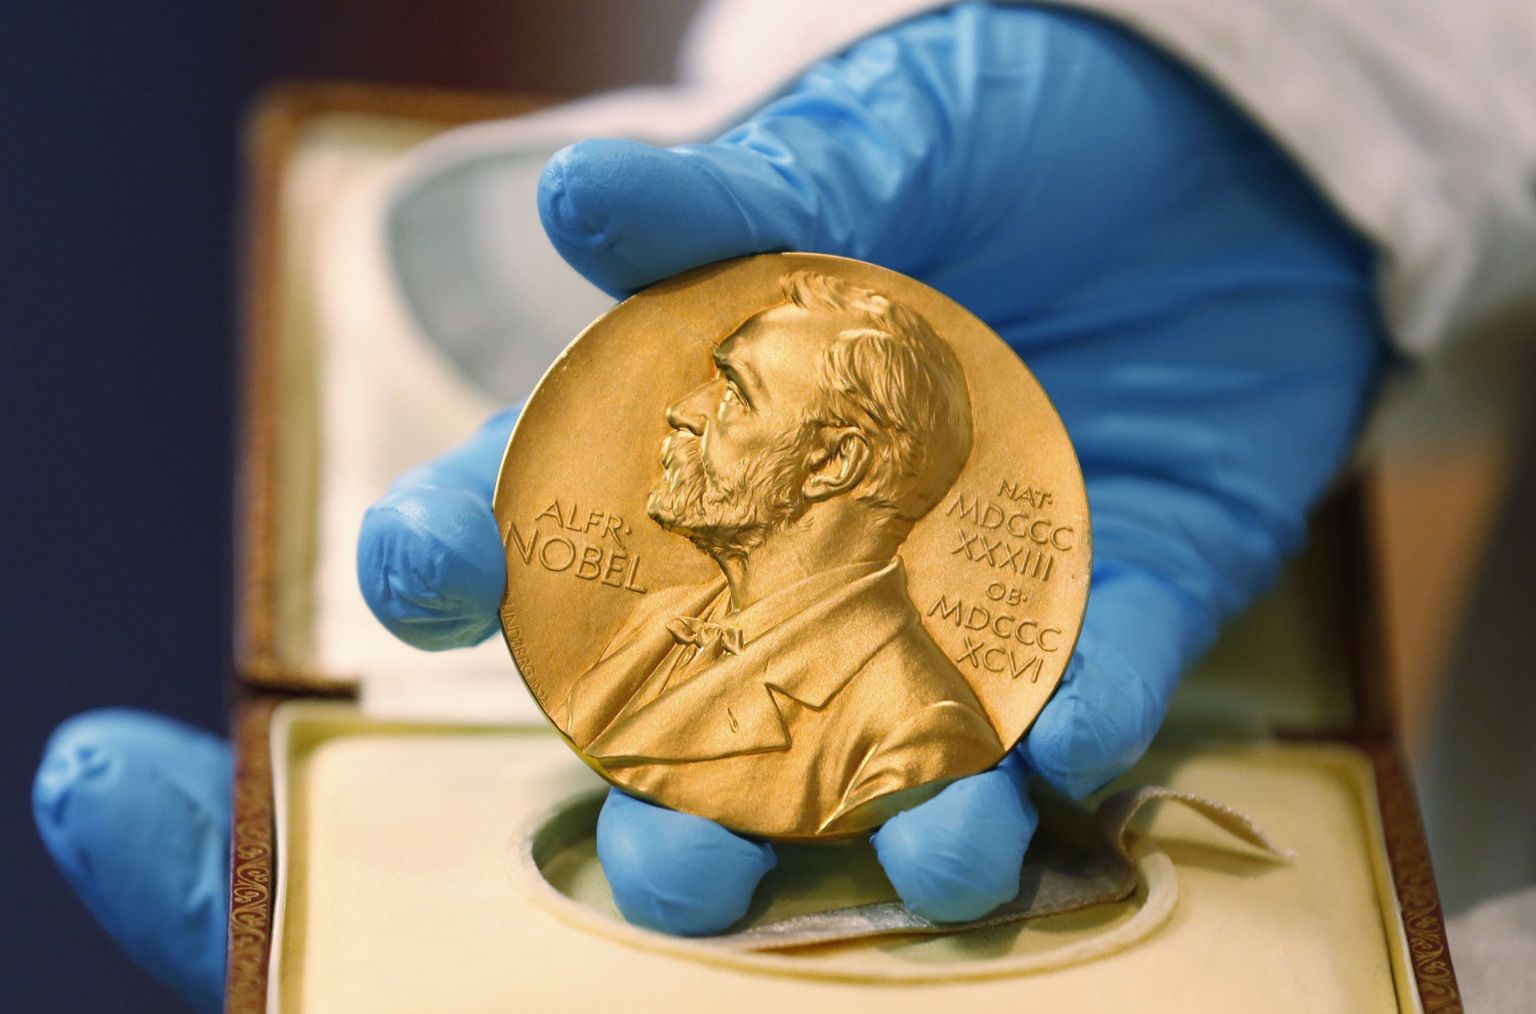 Nobeli medal